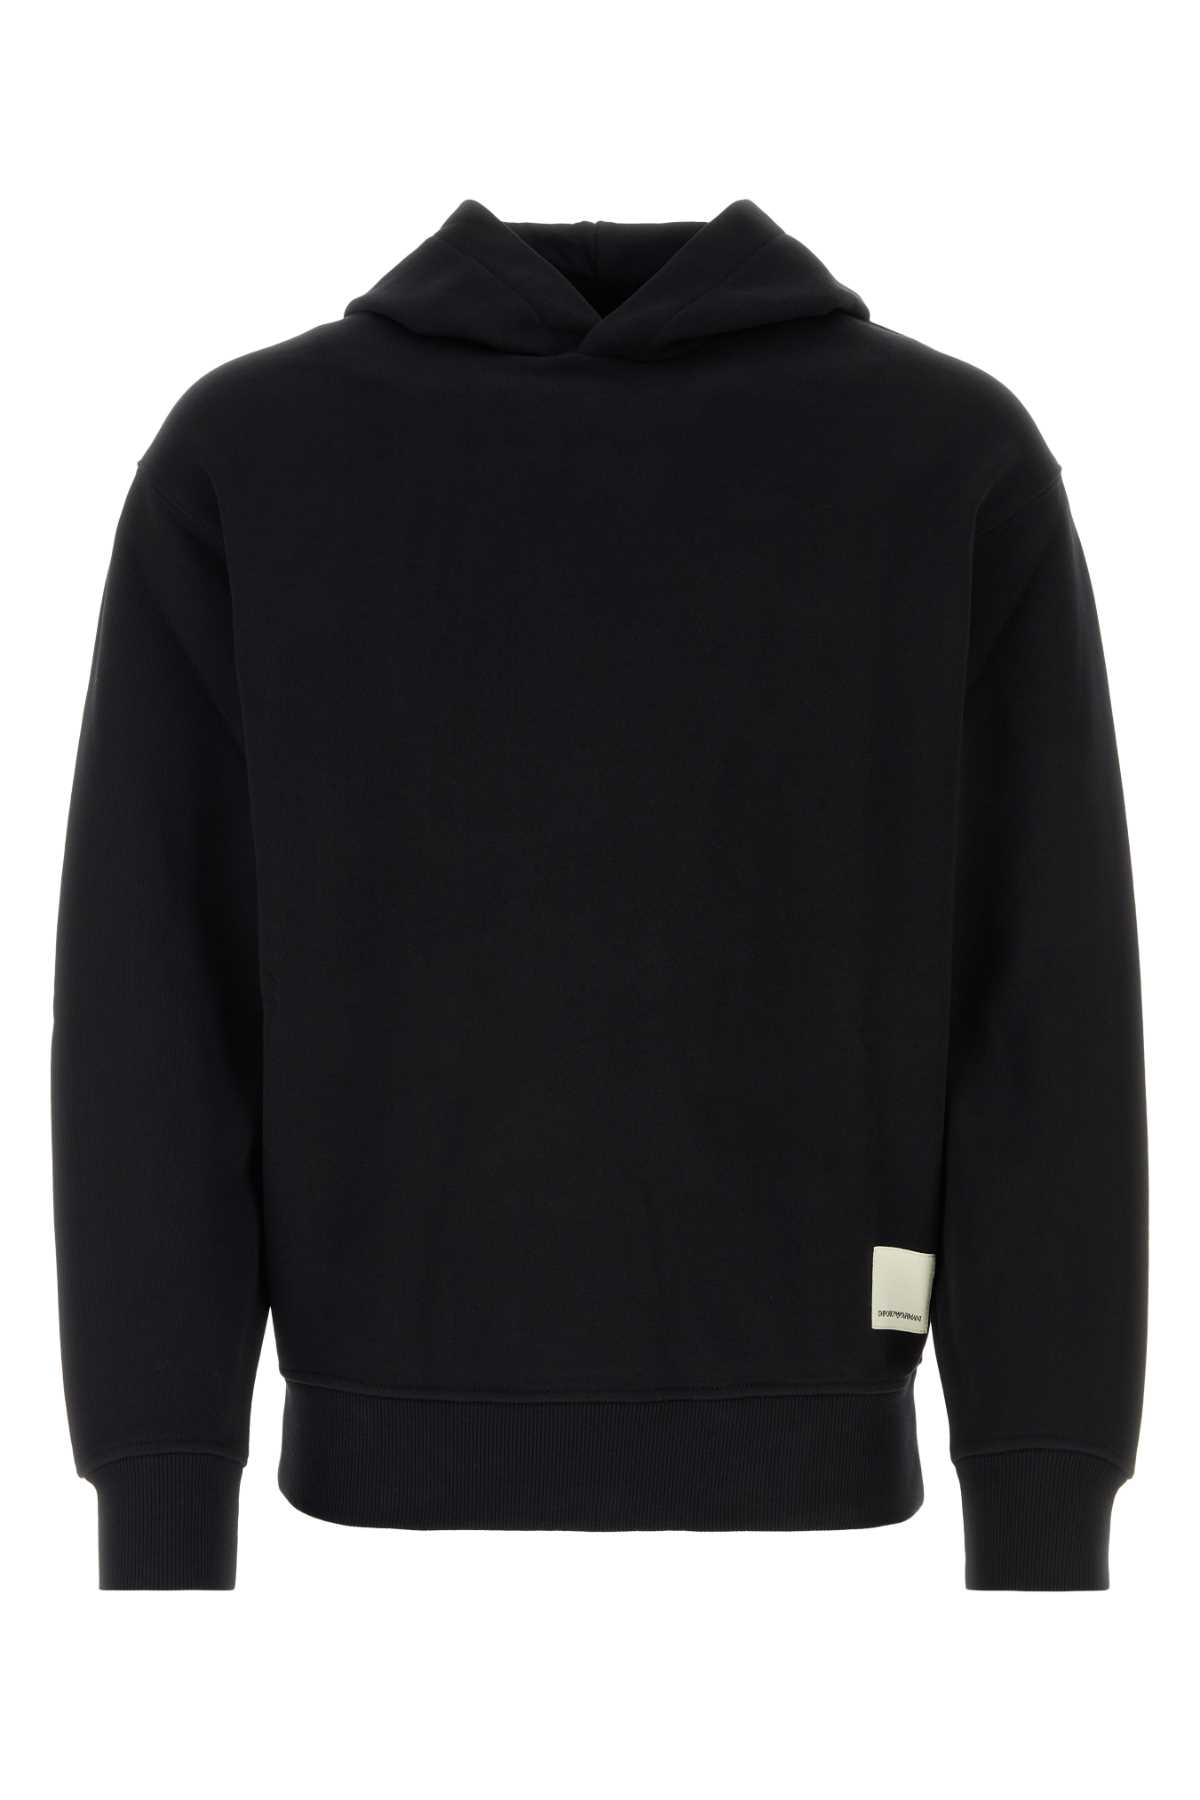 Shop Emporio Armani Black Cotton Sweatshirt In 0095